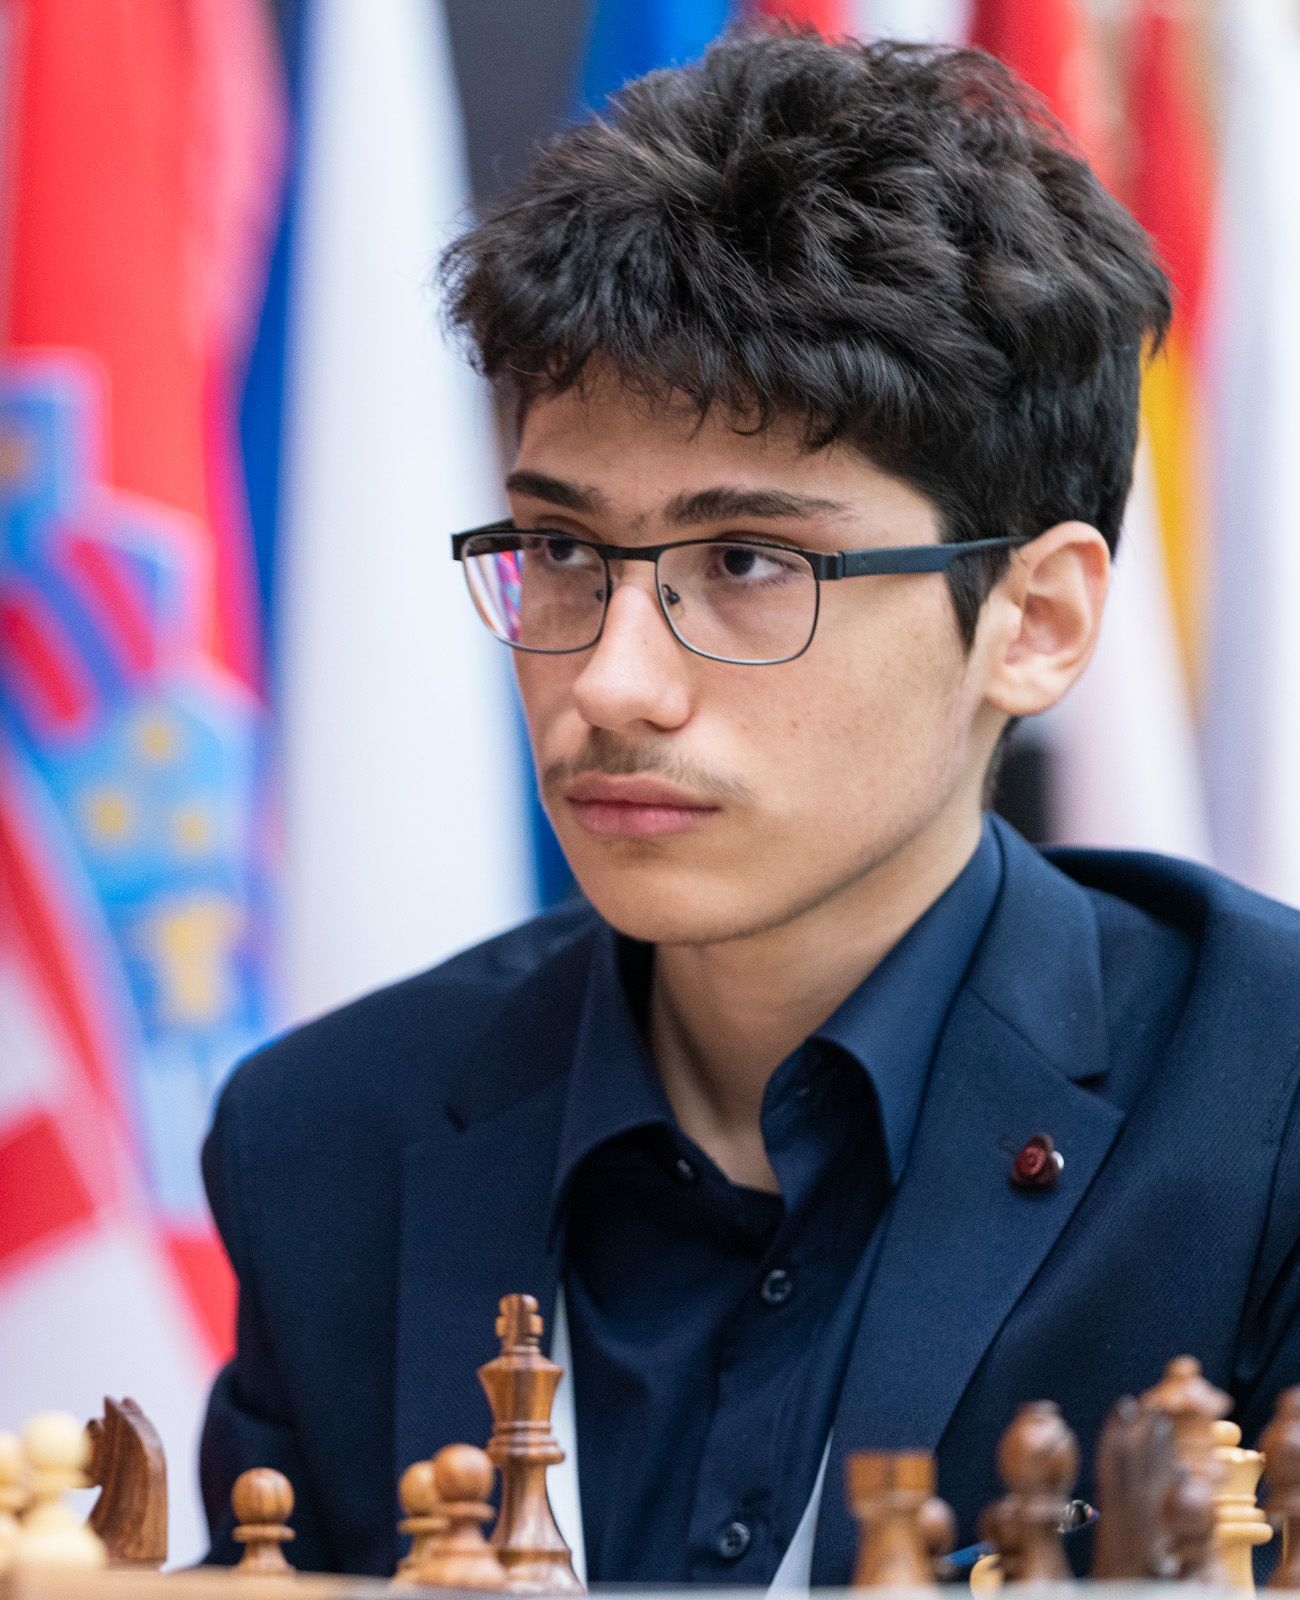 12-year-old Alireza Firouzja is Iranian Champion